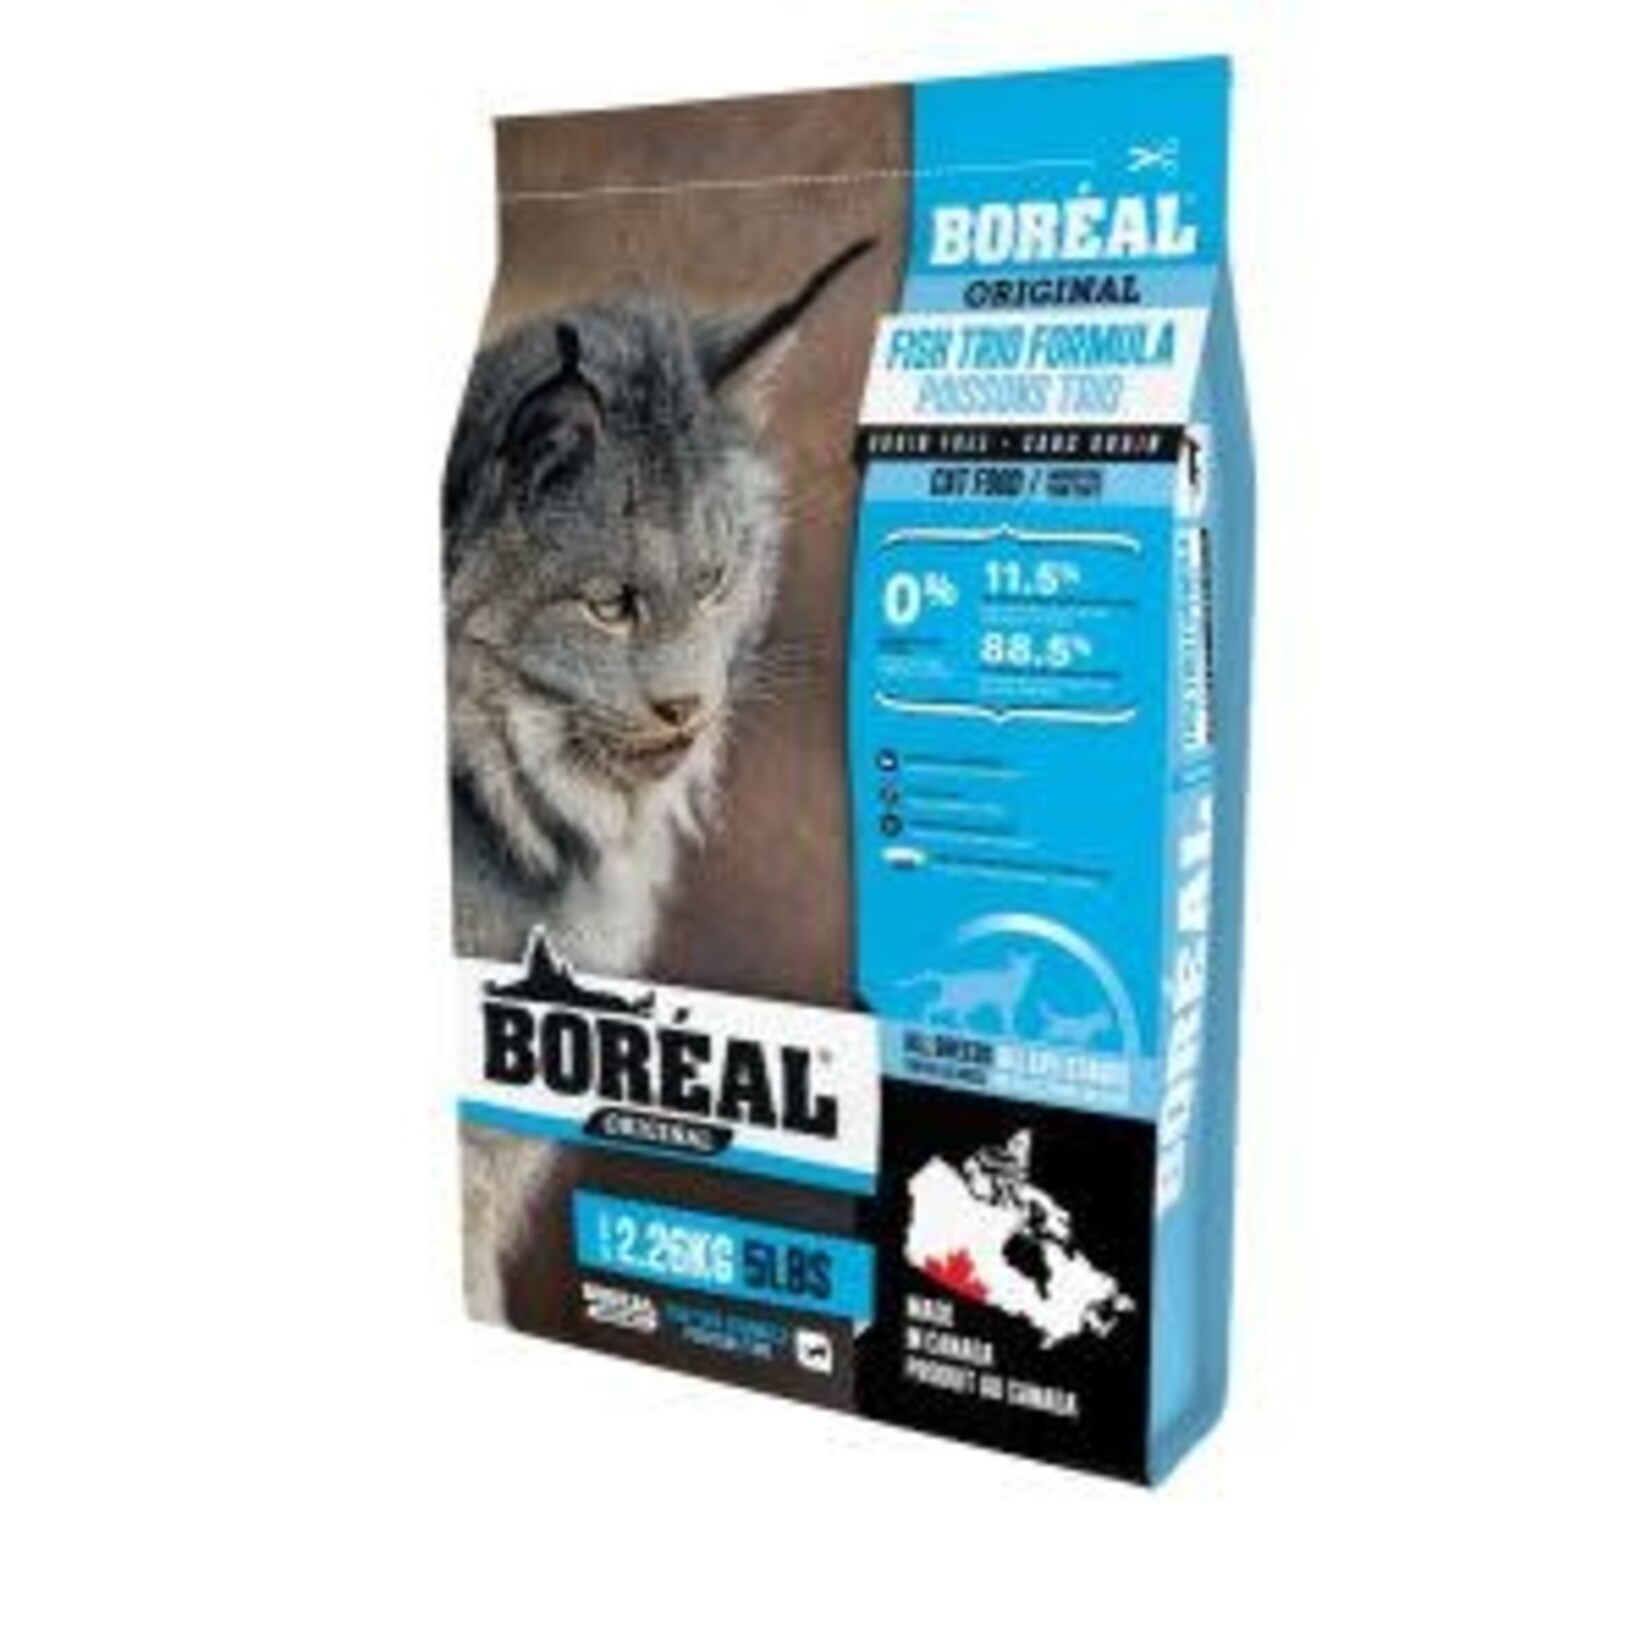 Boreal Boreal Original Dry Cat Food